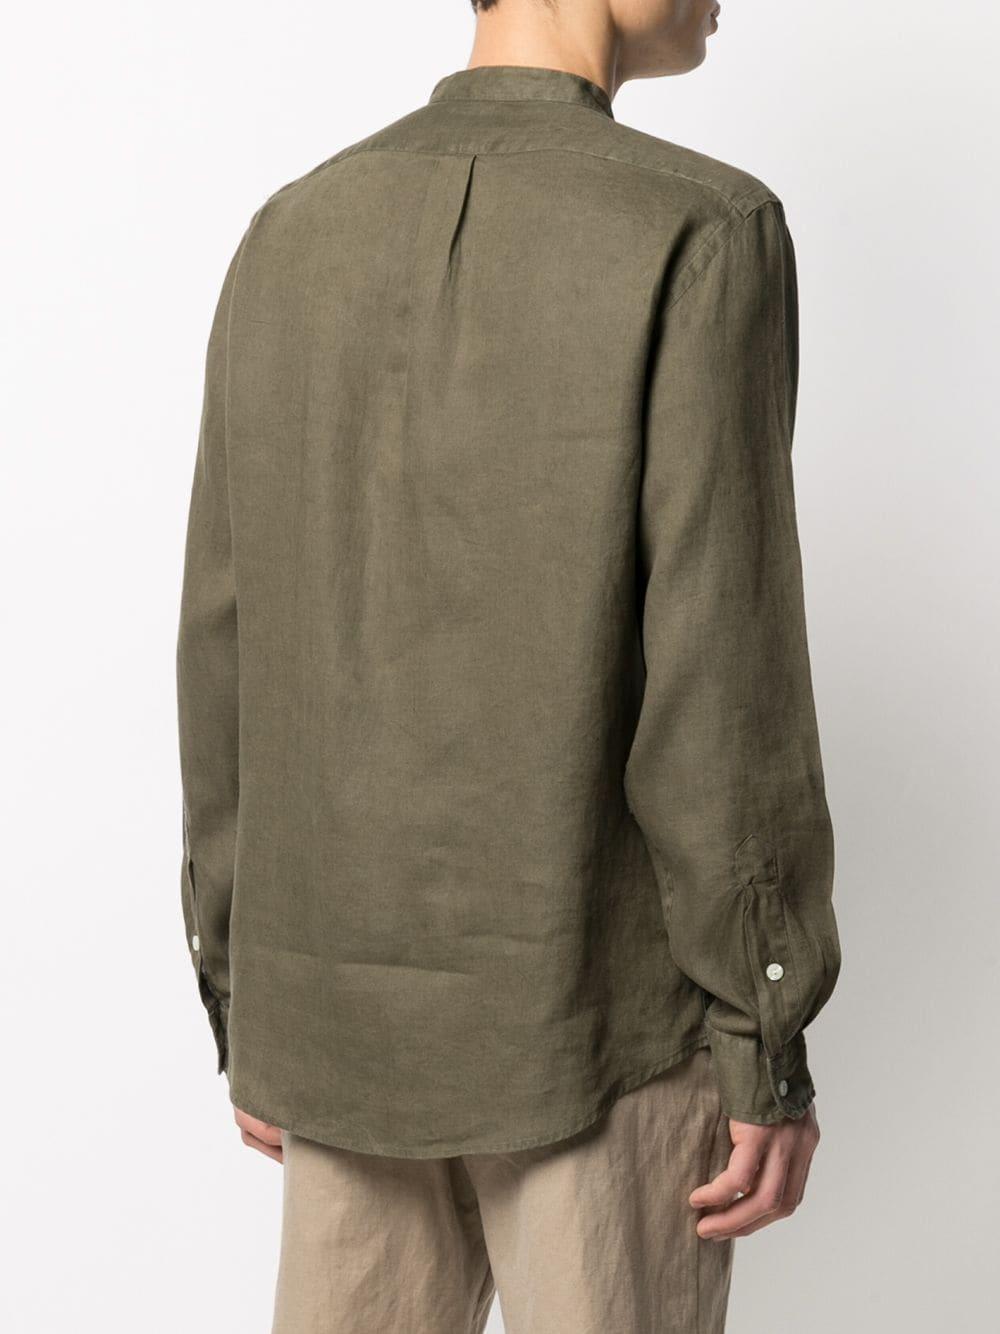 Polo Ralph Lauren Collarless Linen Shirt in Green for Men - Lyst